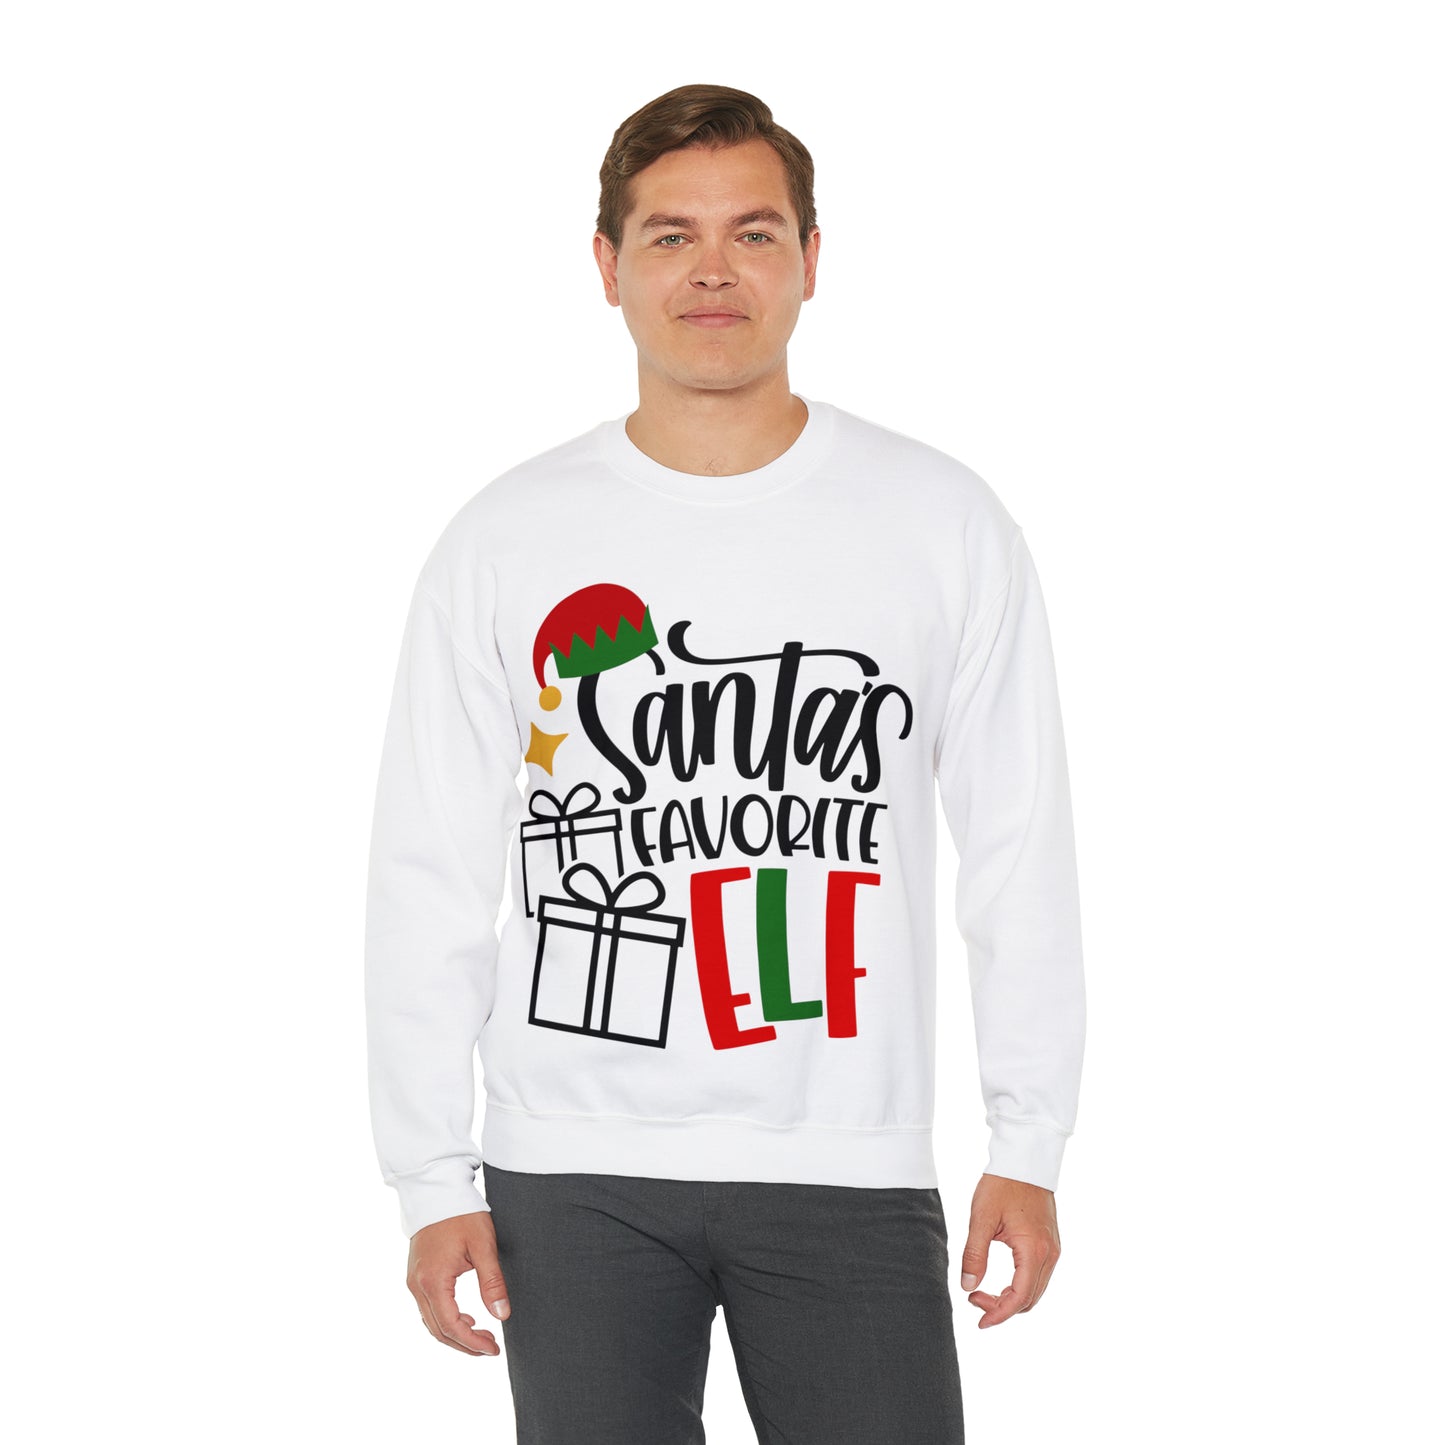 Santa's Favorite Elf Crewneck Sweatshirt, Funny Sweatshirt, Elf Christmas Shirt, Cute Sweatshirt, Christmas Slogan Shirts, Christmas Sweater